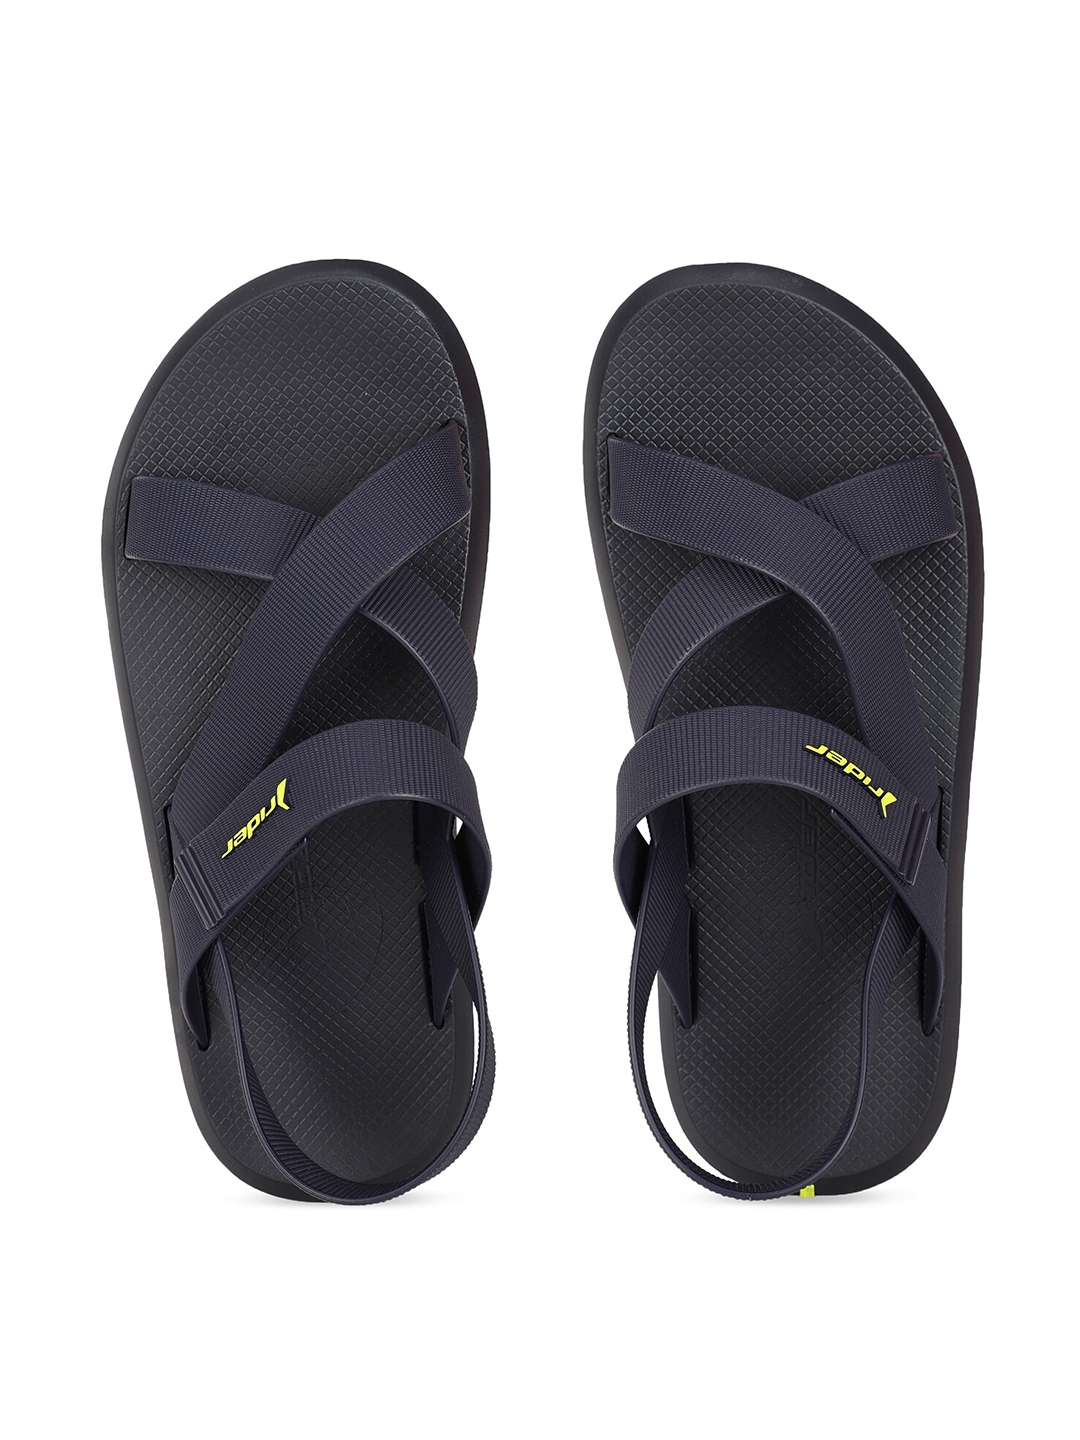 Buy Rider Men Navy Blue Comfort Sandals - Sandals for Men 16346720 | Myntra